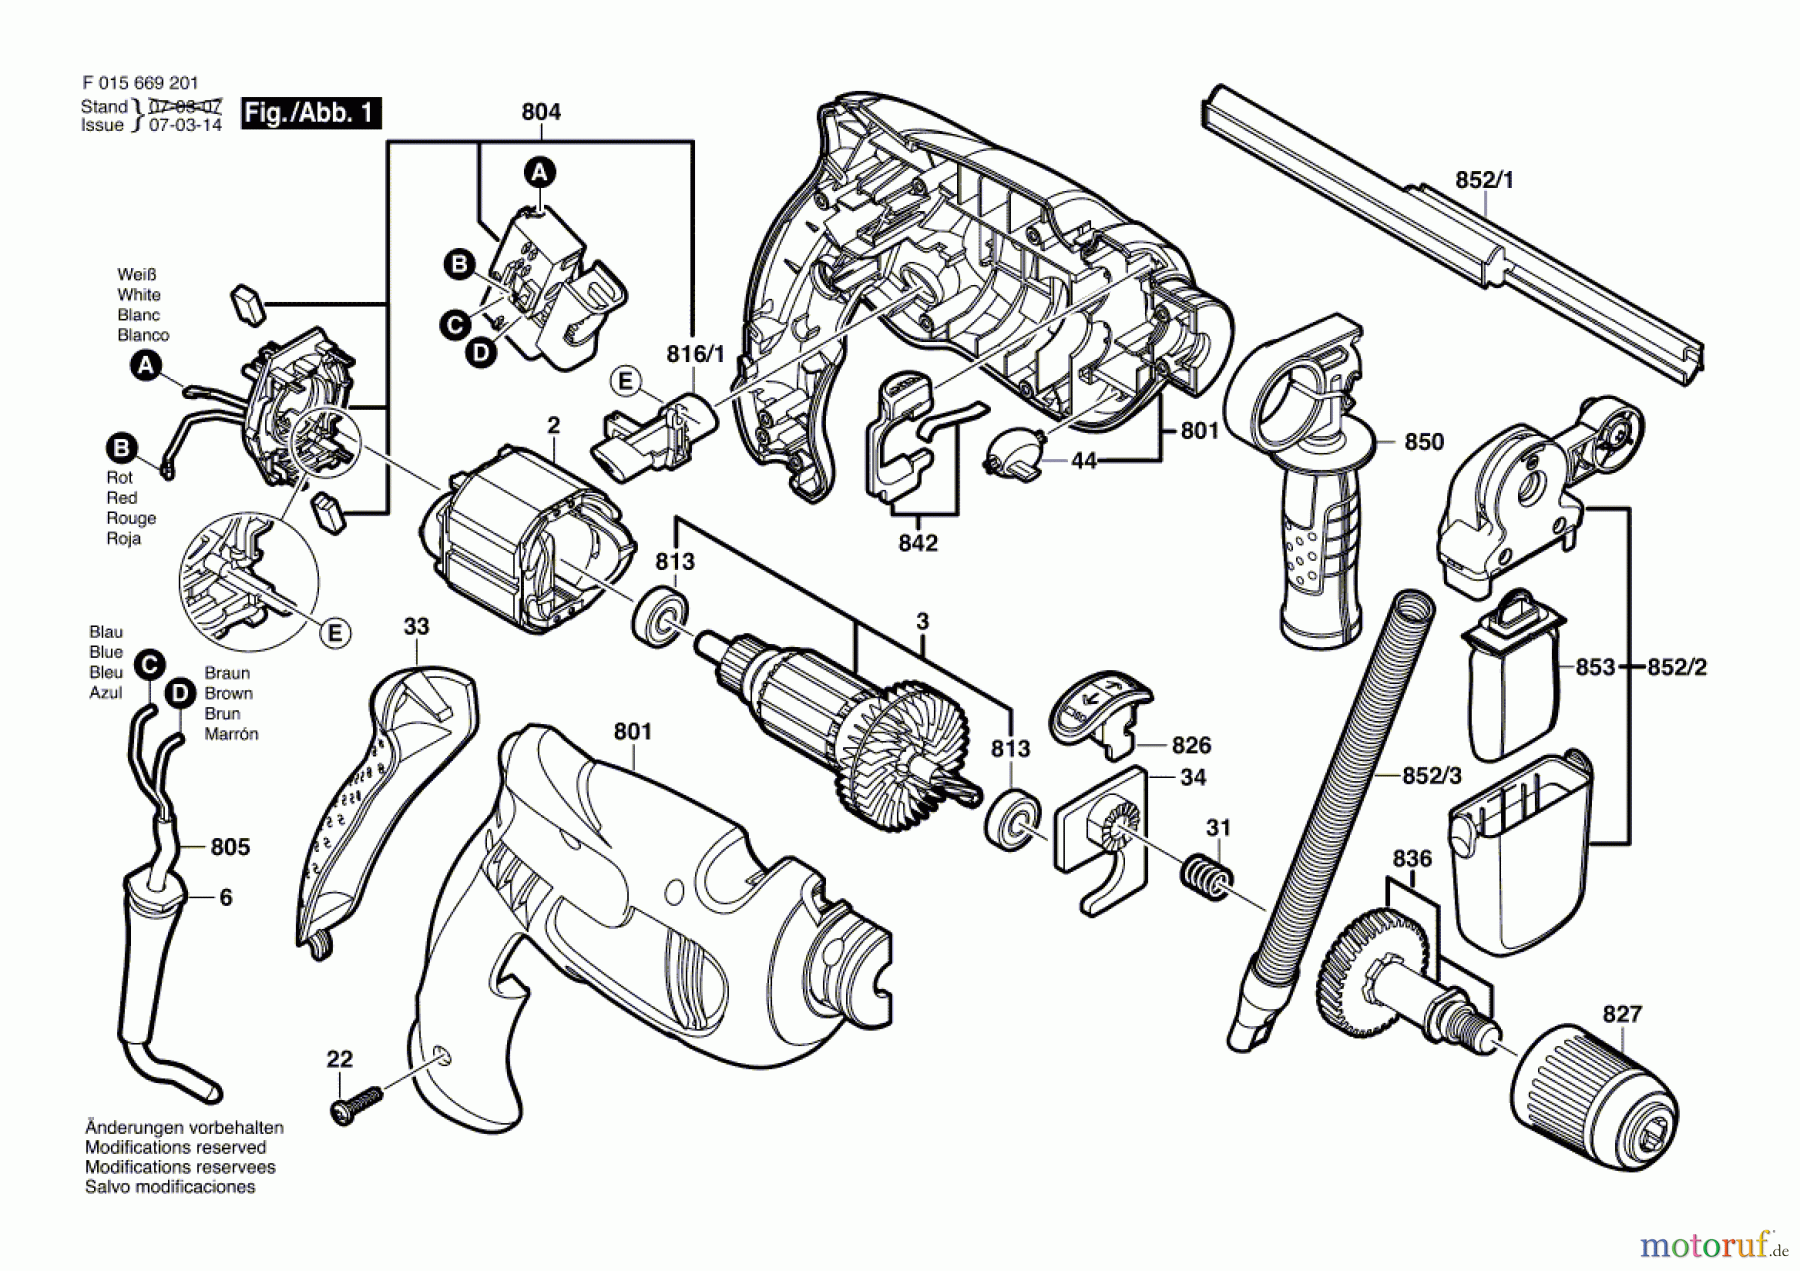  Bosch Werkzeug Schlagbohrmaschine 6772 Seite 1